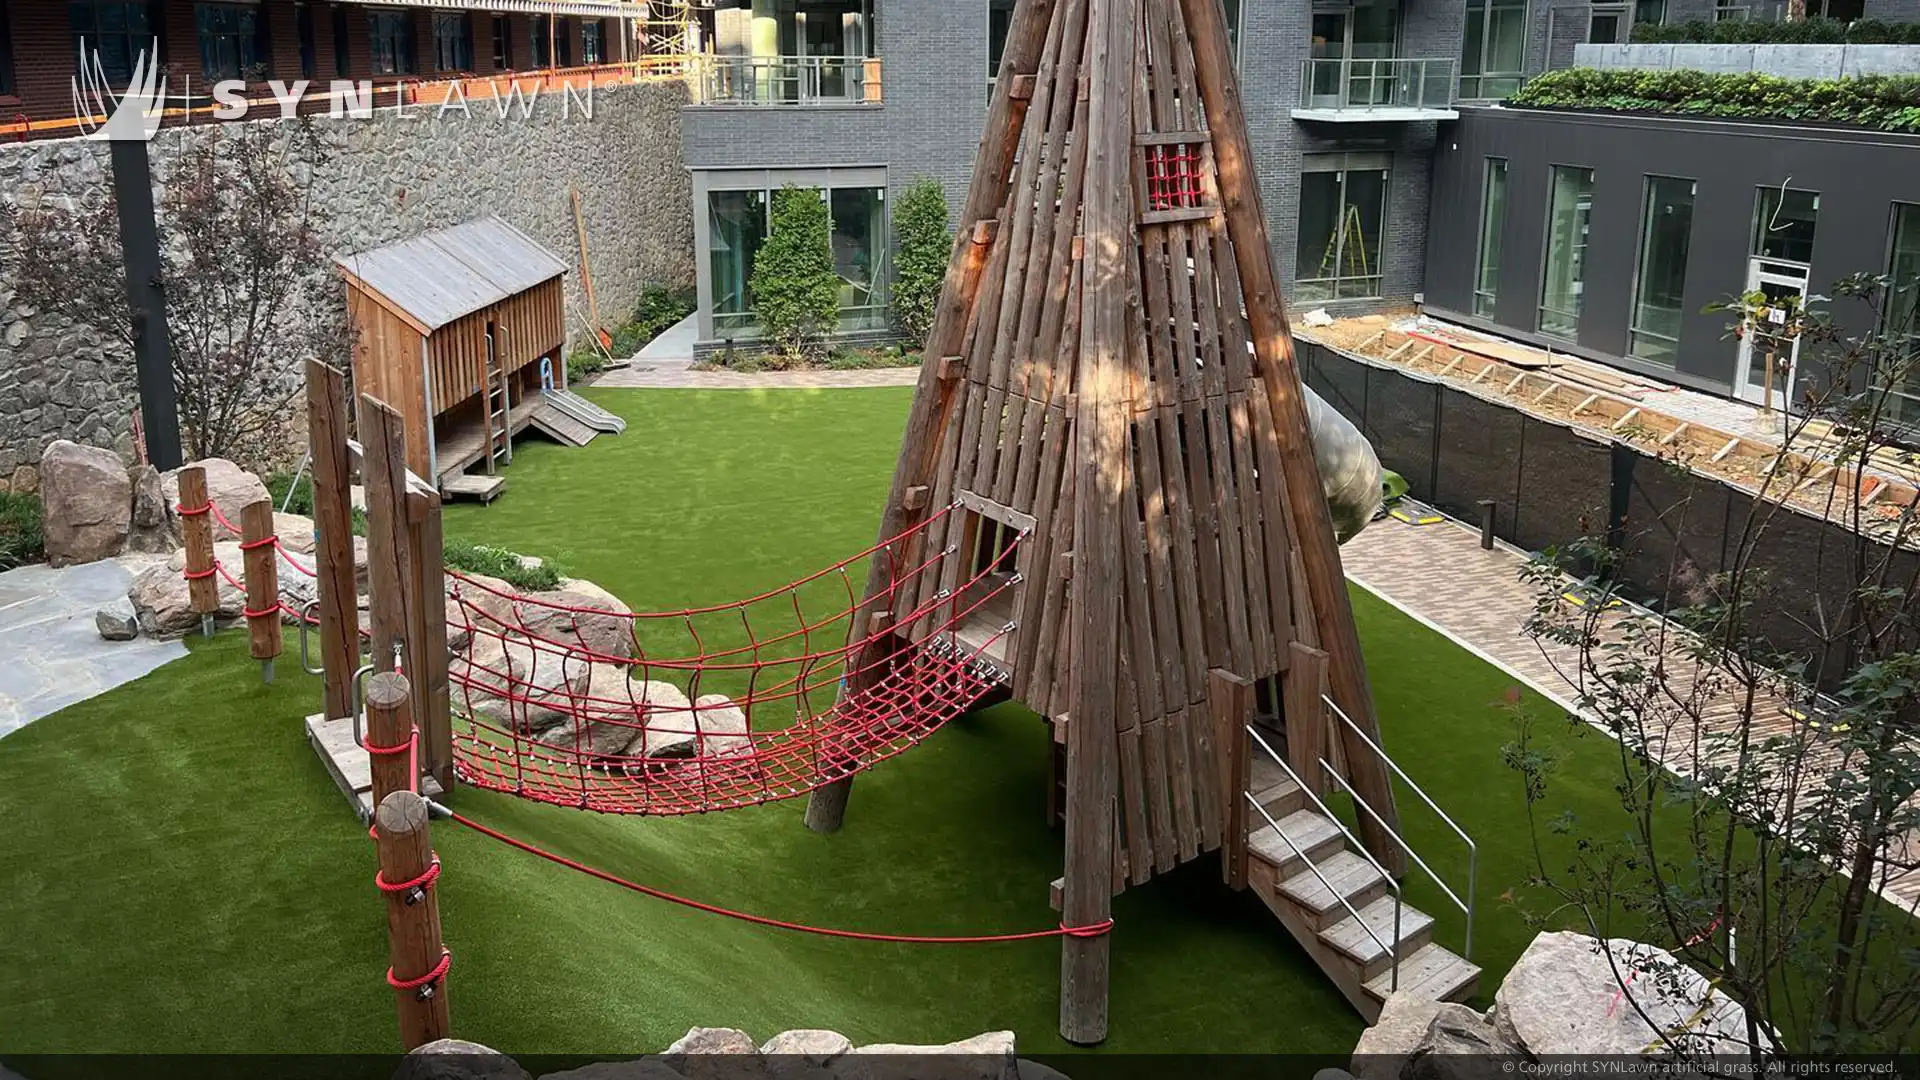 Playground de aventura exclusivo criado para edifício residencial multifamiliar